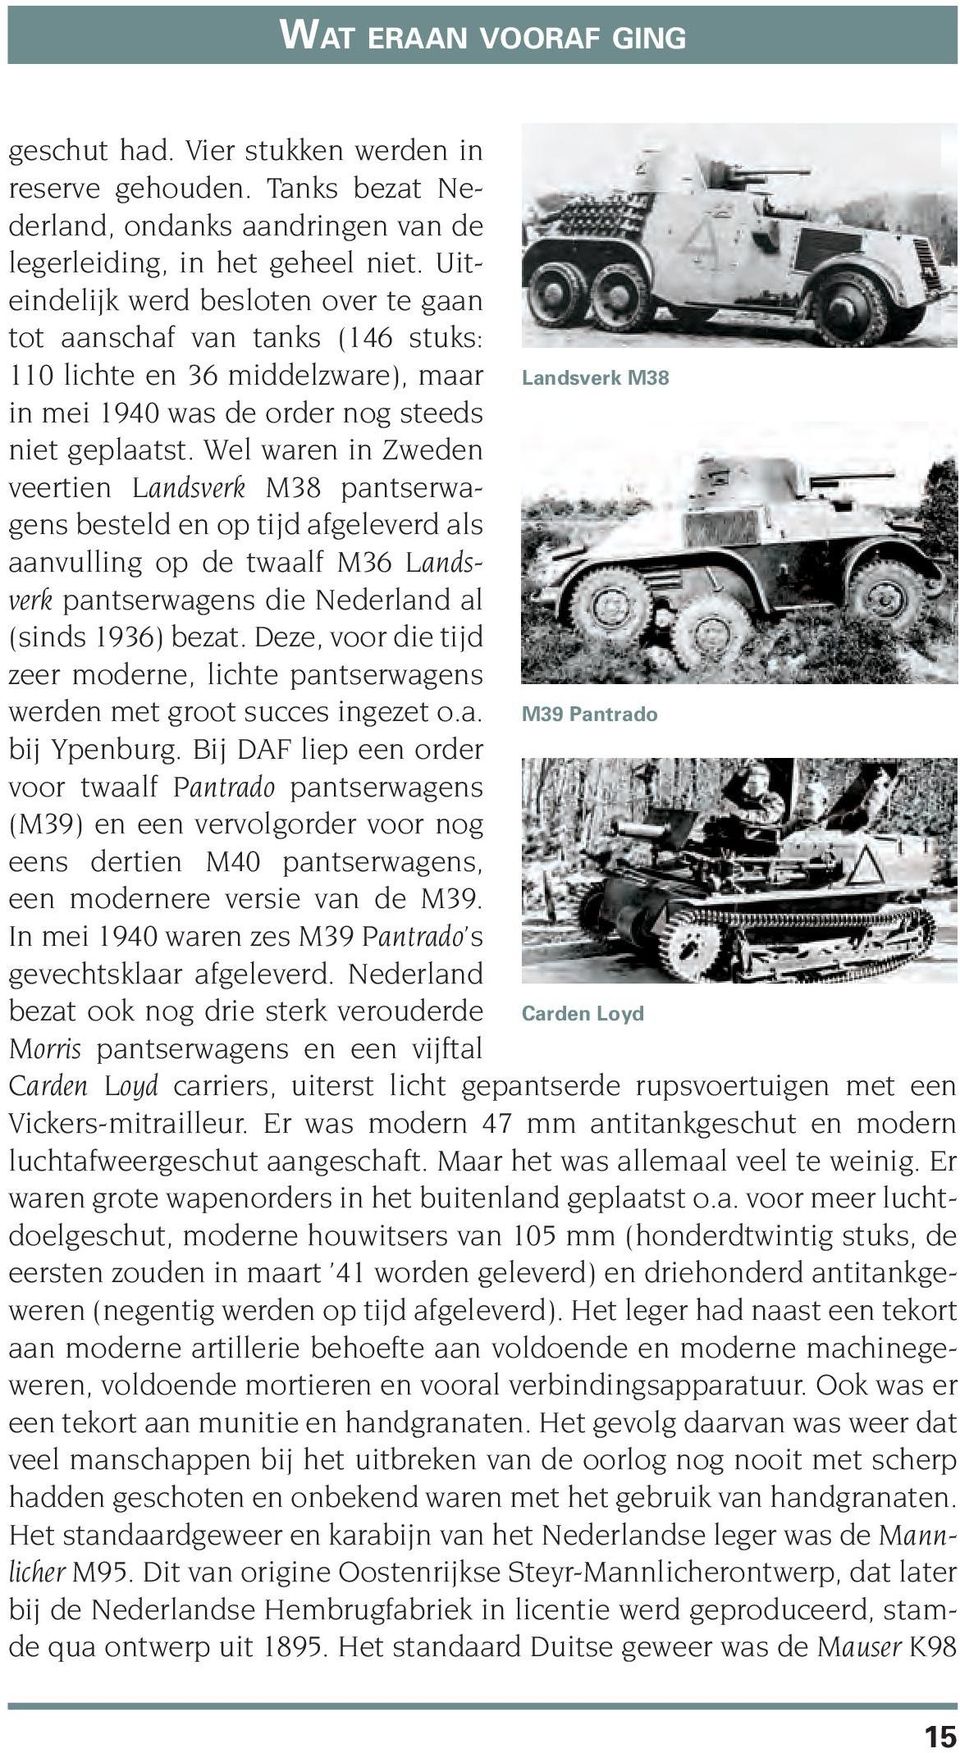 Wel waren in Zweden veertien Landsverk M38 pantserwagens besteld en op tijd afgeleverd als aanvulling op de twaalf M36 Landsverk pantserwagens die Nederland al (sinds 1936) bezat.